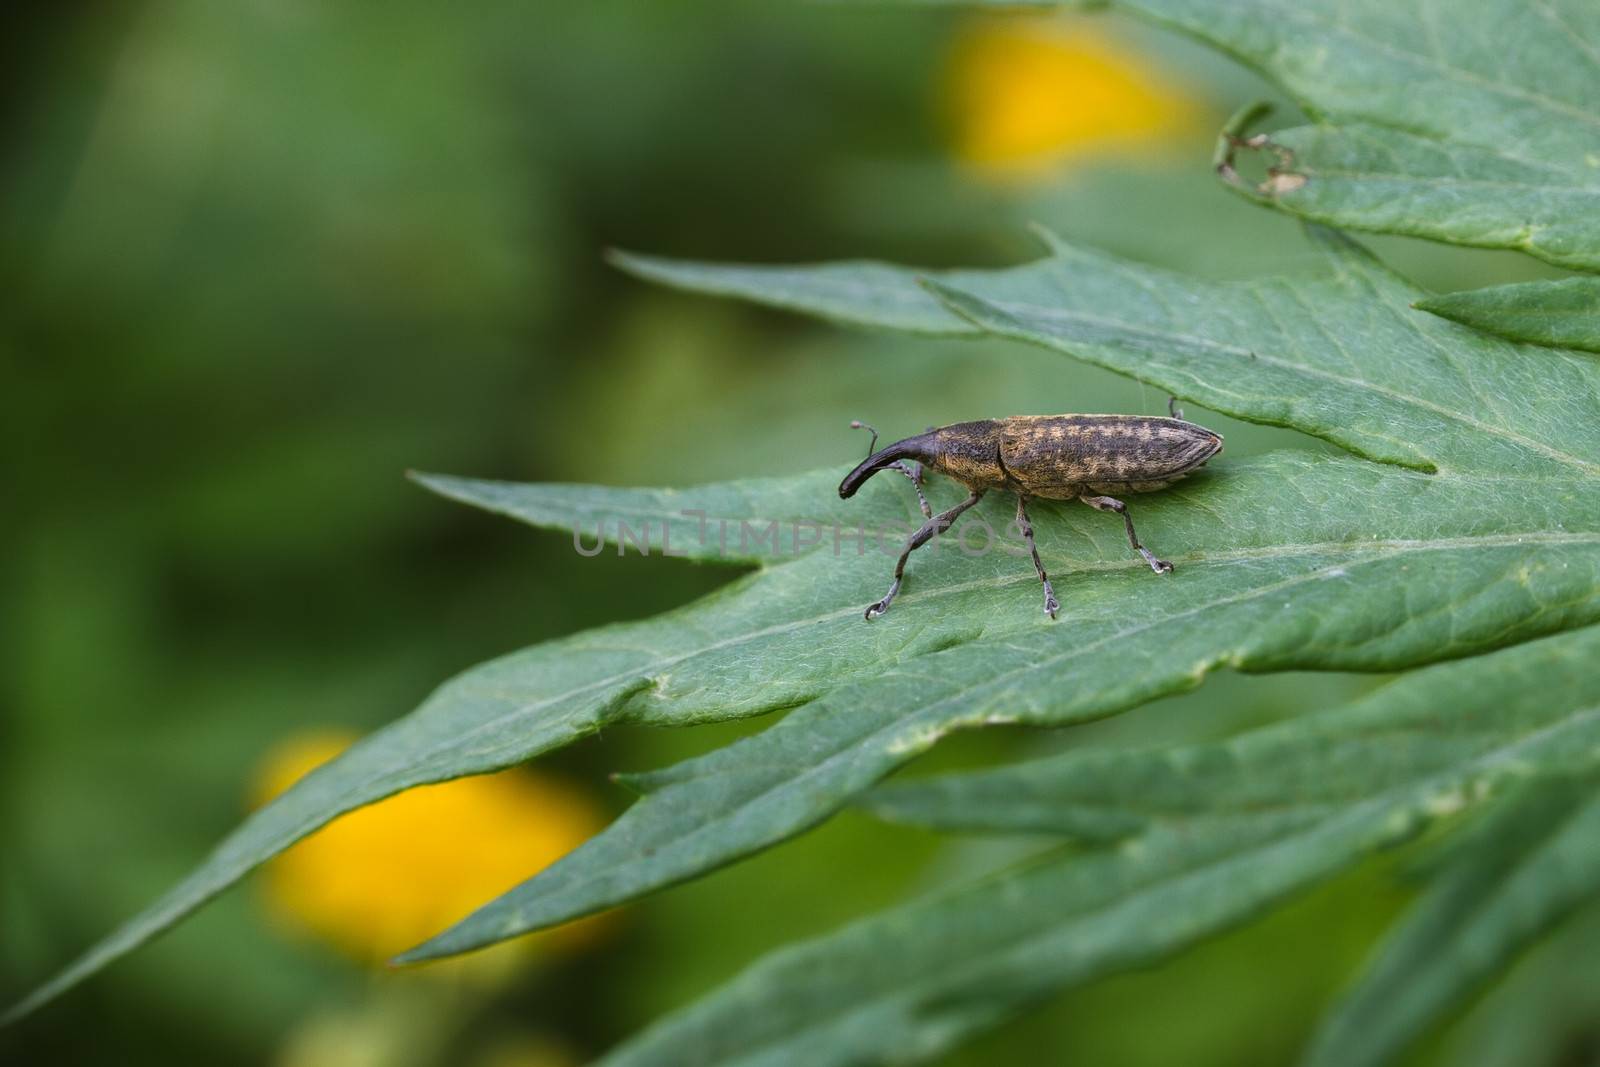 Weevil beetle on a green leaf